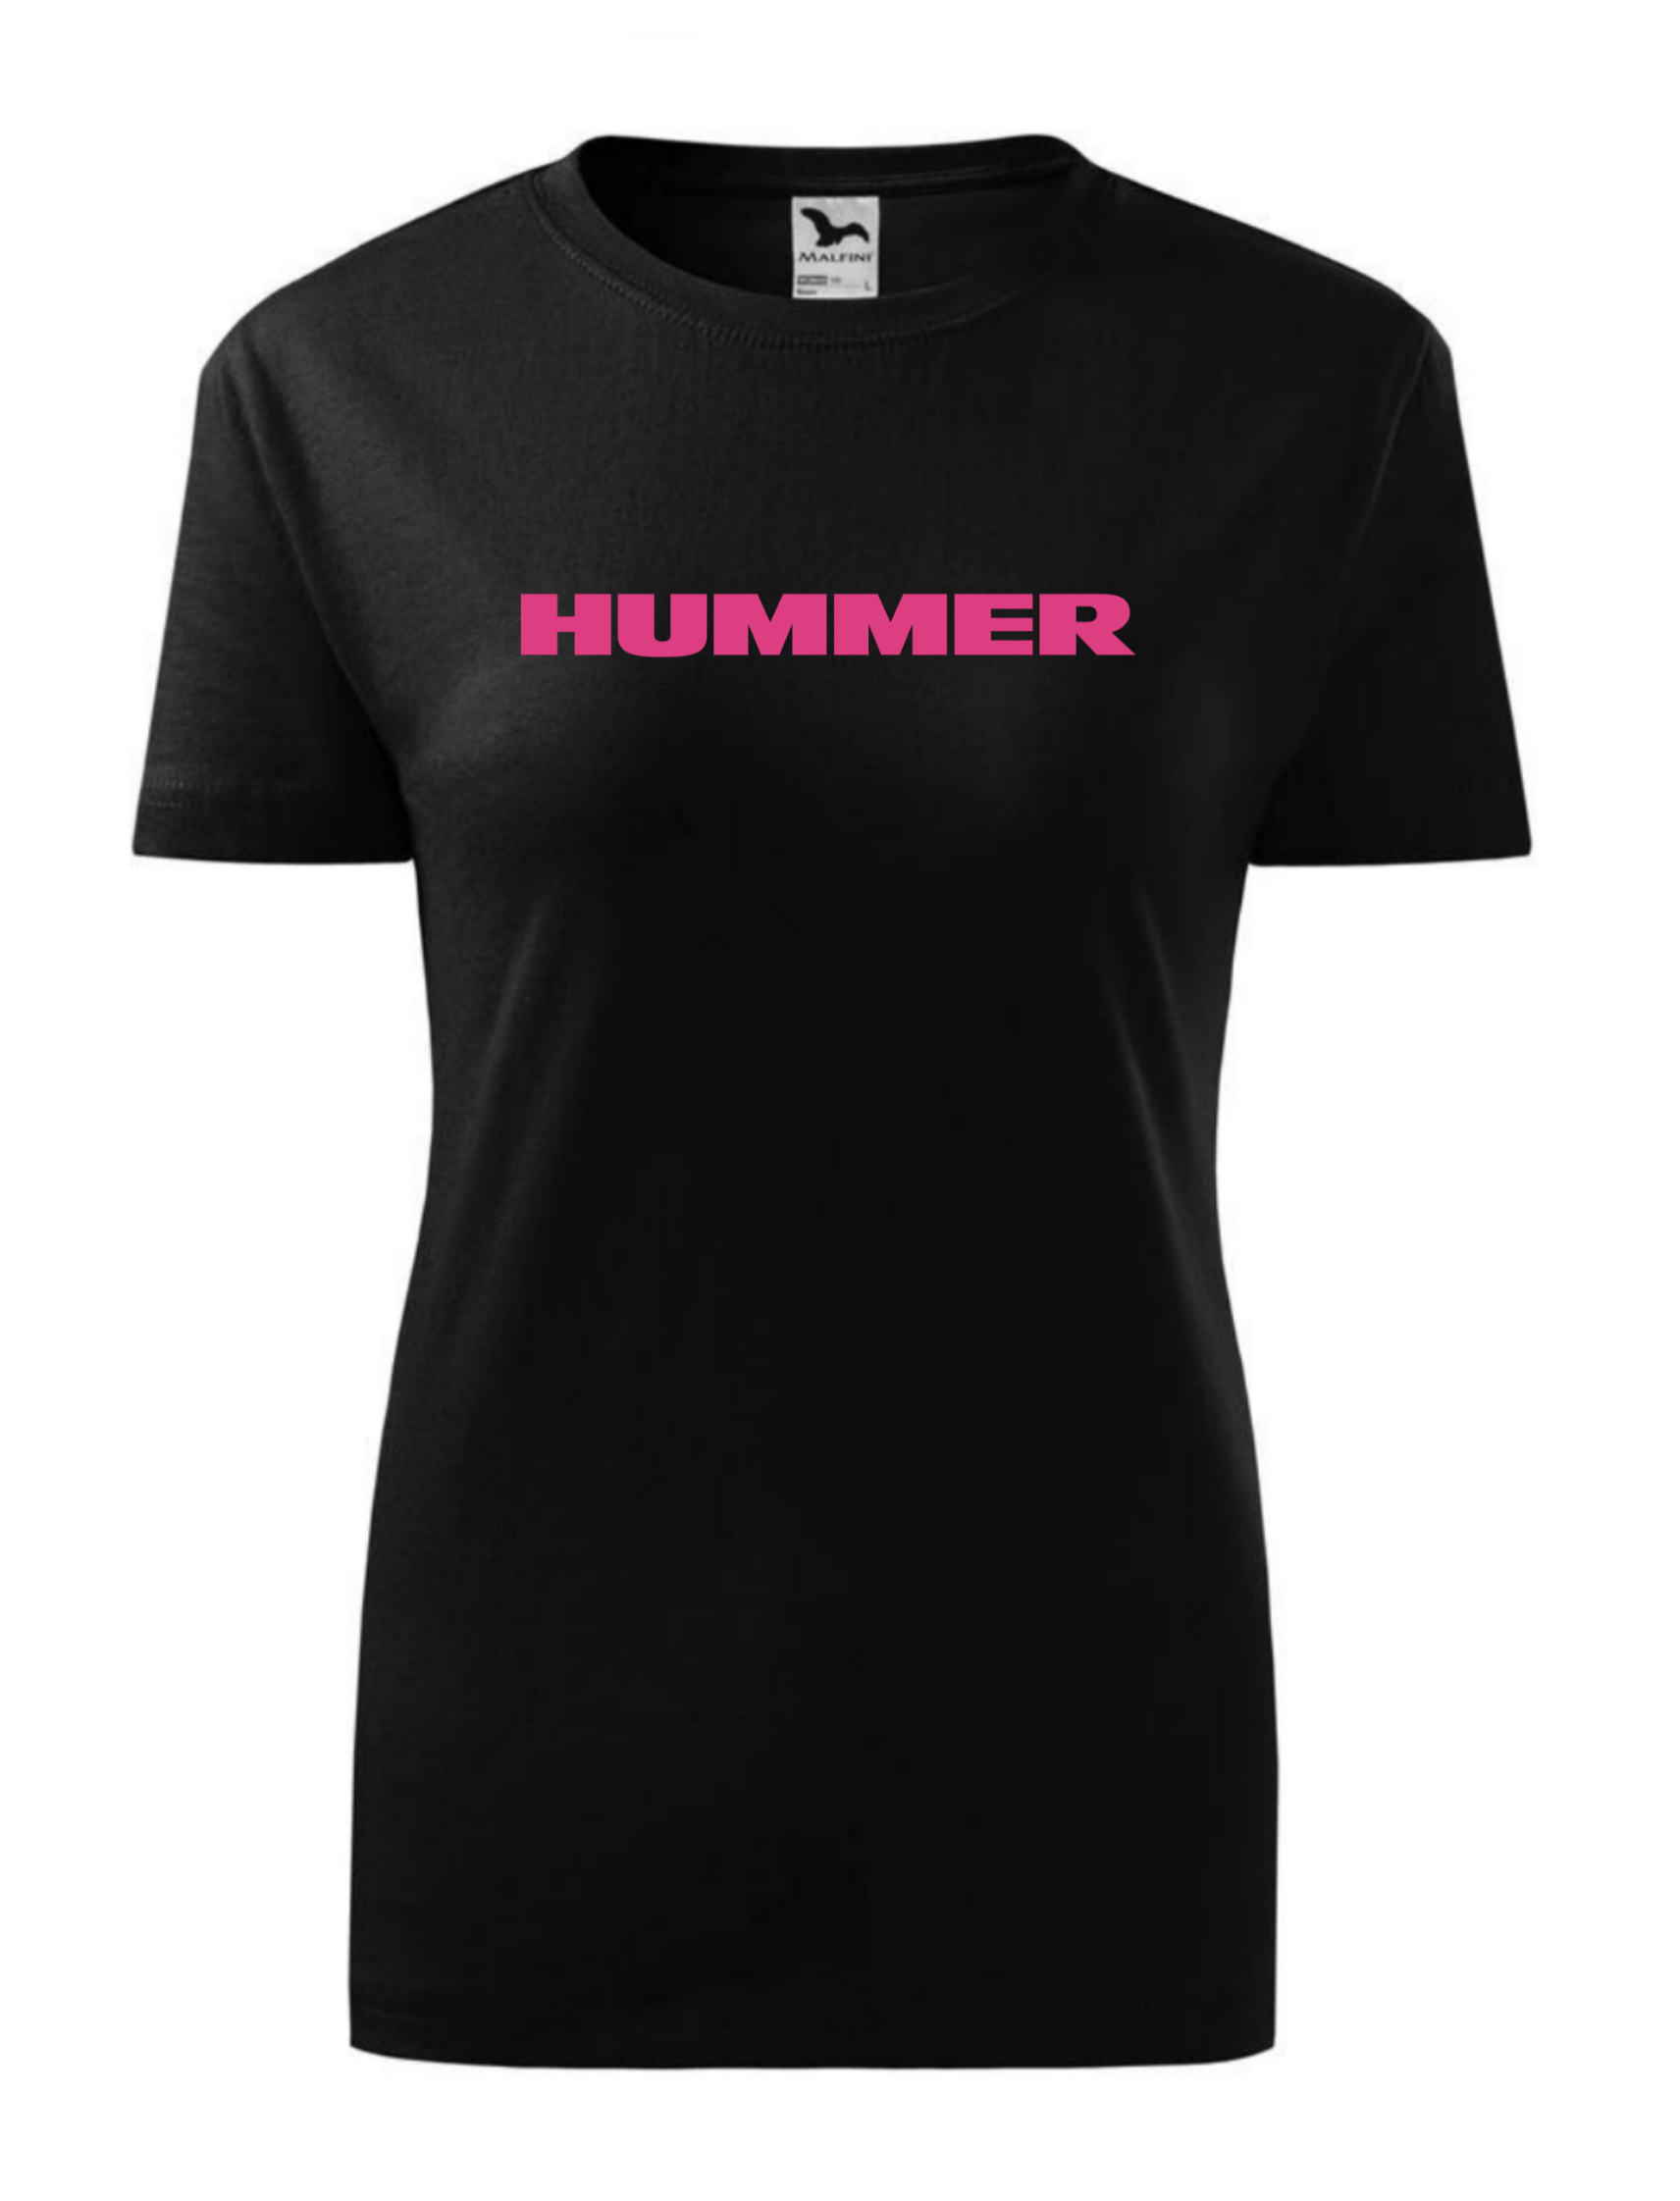 Dámské tričko s potiskem značky Hummer